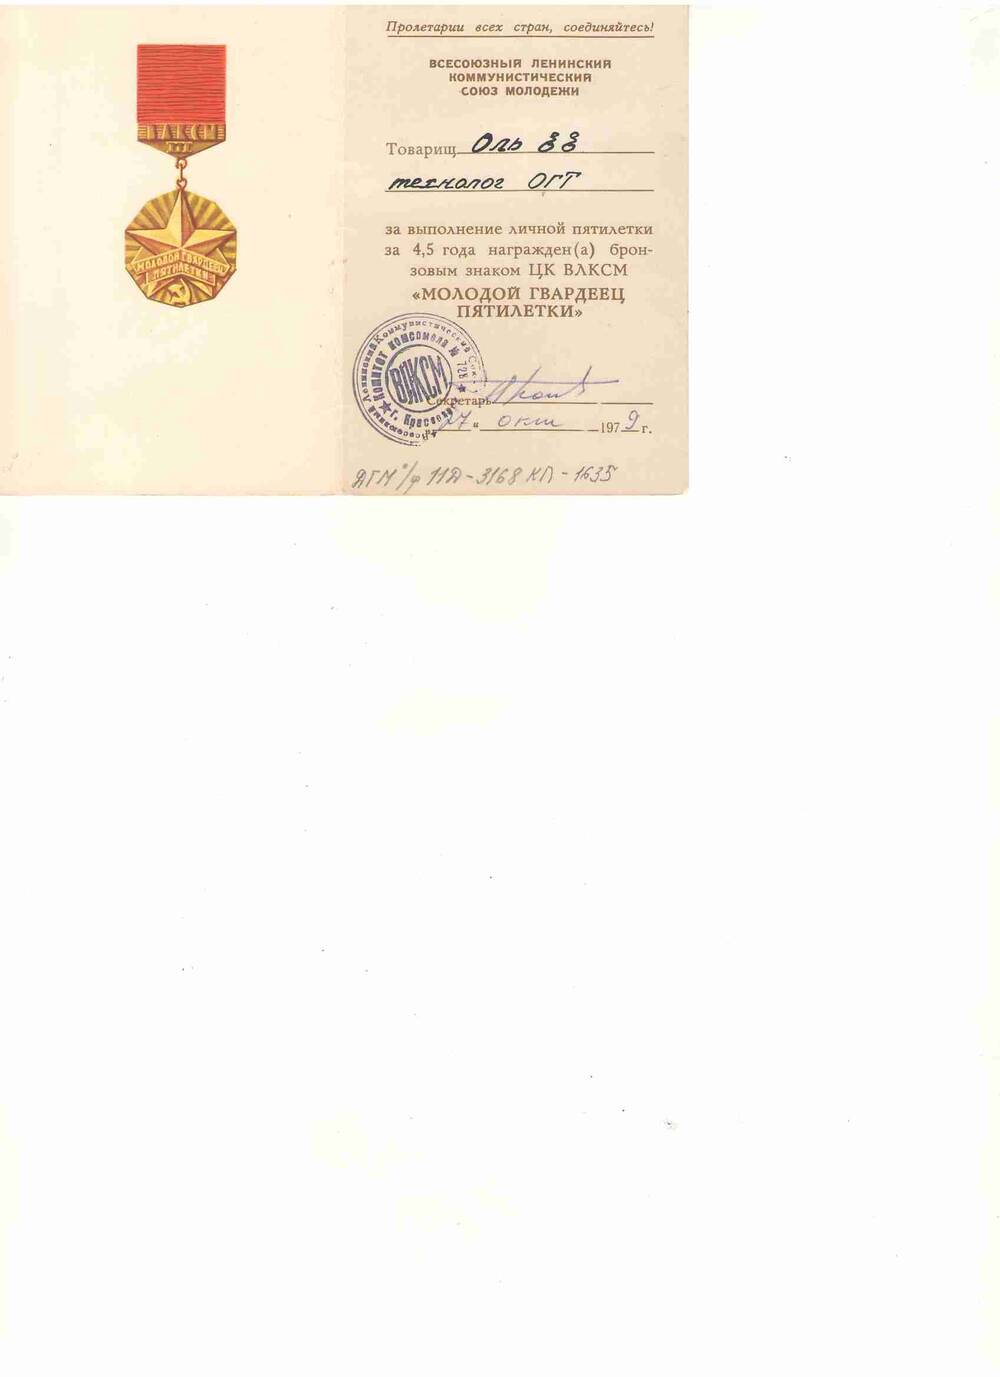 Удостоверение на имя Оля Егора Егоровича, технолога ОГТ, о награждении бронзовым знаком ЦК ВЛКСМ «Молодой гвардеец пятилетки» 27 октября 1972 г.